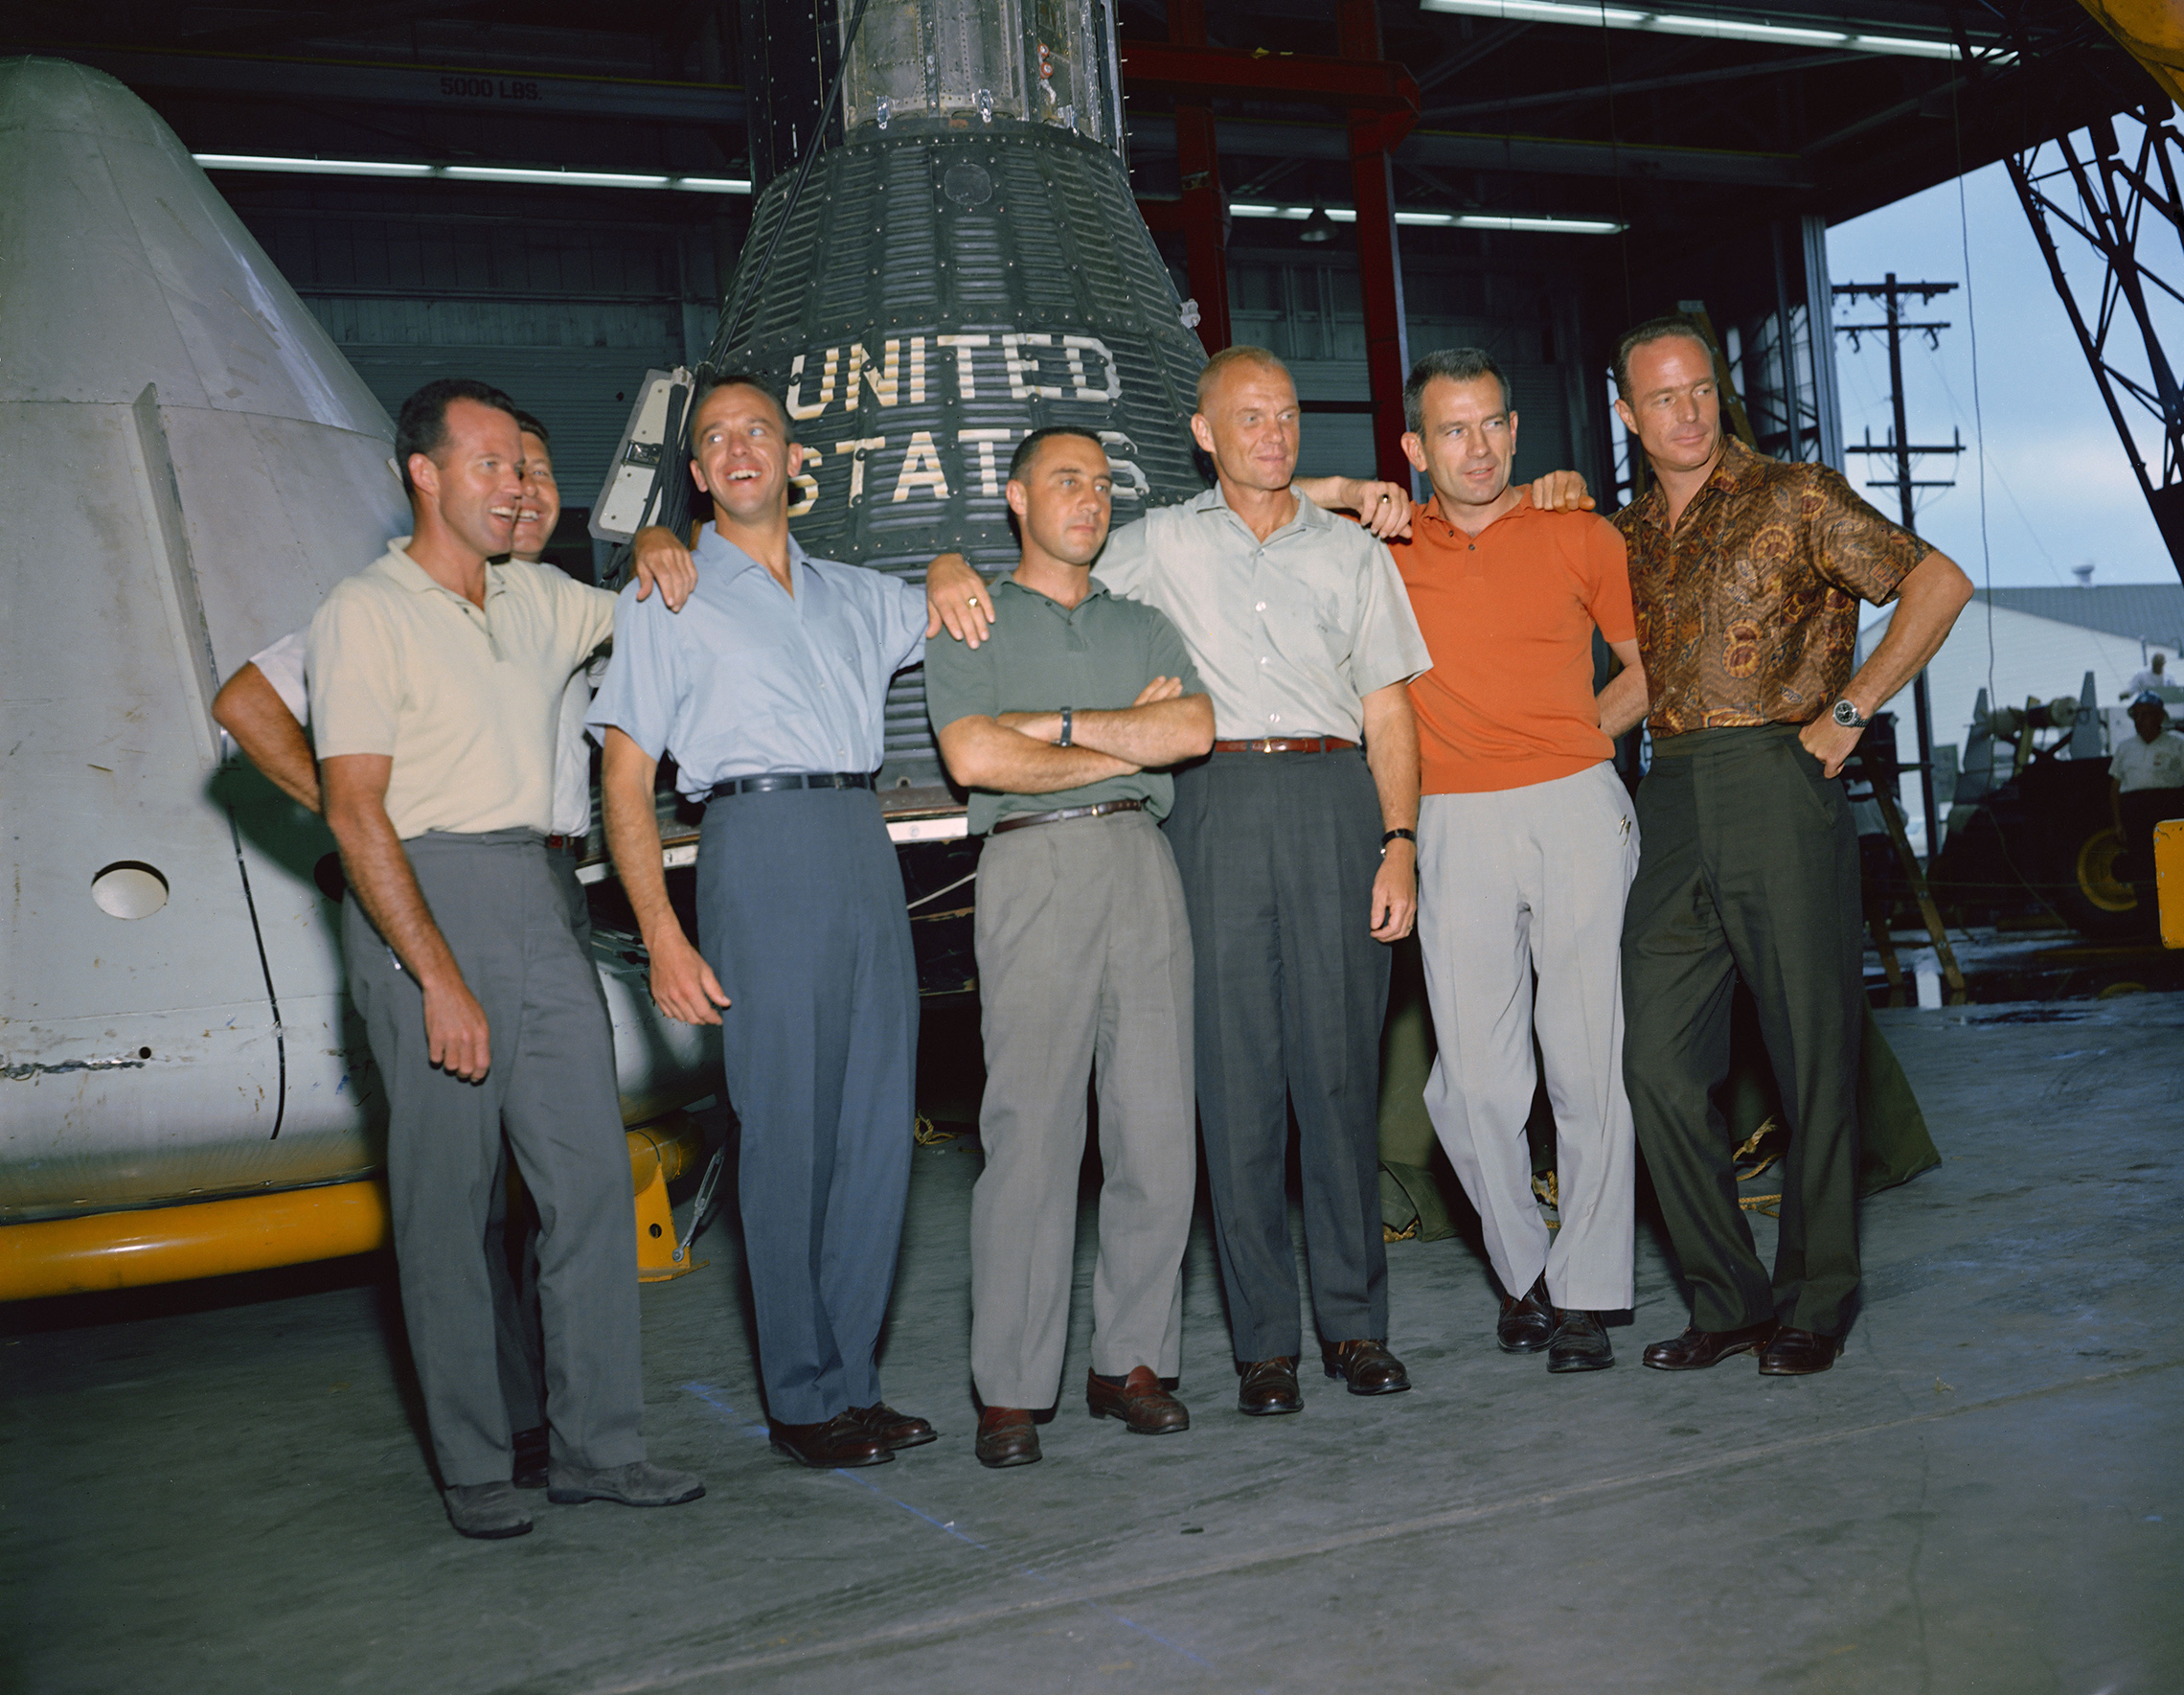 Am 9. April 1959 gab der erste Administrator der NASA, Dr. Keith Glennan, auf einer Pressekonferenz in Washington, DC, die Namen der ersten Astronautengruppe der Agentur bekannt, die heute als die ursprünglichen Sieben bekannt ist.Zu ihnen gehörten drei Marineflieger, M. Scott Carpenter, Walter M. Schirra Jr. und Alan B. Shepard Jr.; Kraftpiloten, L. Gordon Cooper Jr., Virgil I. (Gus) Grissom und Donald K. (Deke) Slayton; zusammen mit dem Marine Corps-Flieger John H. Glenn Jr. wurde dieses Gruppenfoto der ursprünglichen Mercury-Astronauten im Juni 1963 im Manned Spacecraft Center (MSC), jetzt Johnson Space Center, in Houston, Texas, aufgenommen. Die Astronauten sind von links nach rechts: Cooper, Schirra, Shepard, Grissom, Glenn, Slayton und Carpenter. Das Projekt Mercury war das erste große Projekt der NASA. Ziel des Programms war es, ein vom Menschen bewertetes Raumschiff in eine Umlaufbahn um die Erde zu bringen, die Leistung der Astronauten unter solchen Bedingungen zu beobachten und den Astronauten und das Raumschiff sicher zu bergen. Die Merkurflüge bewiesen, dass Menschen im Weltraum leben und arbeiten können, und ebneten den Weg für die Gemini- und Apollo-Programme sowie für alle weiteren bemannten Raumflüge. (NASA)'s first administrator, Dr. Keith Glennan, announced the names of the agency's first group of astronauts at a news conference in Washington, D.C. Now known as the "Original Seven," they included three Naval aviators, M. Scott Carpenter, Walter M. Schirra Jr., and Alan B. Shepard Jr.; three Air Force pilots, L. Gordon Cooper Jr., Virgil I. (Gus) Grissom, and Donald K. (Deke) Slayton; along with Marine Corps aviator John H. Glenn Jr. This group photo of the original Mercury astronauts was taken in June 1963 at the Manned Spacecraft Center (MSC), now Johnson Space Center, in Houston, Texas. The astronauts are, left to right: Cooper, Schirra, Shepard, Grissom, Glenn, Slayton and Carpenter. Project Mercury became NASA's first major undertaking. The objectives of the program were to place a human-rated spacecraft into orbit around Earth, observe the astronauts' performance in such conditions and safely recover the astronaut and the spacecraft. The Mercury flights proved that humans could live and work in space, and paved the way for the Gemini and Apollo programs as well as for all further human spaceflight. (NASA)